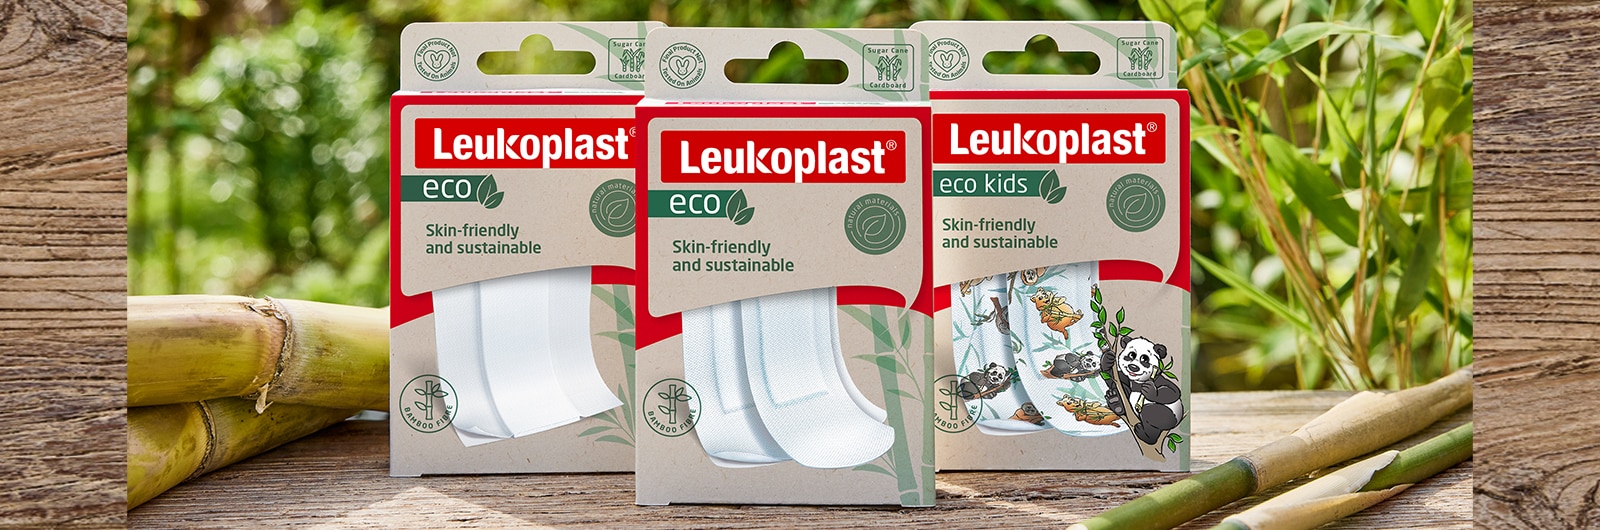 Image montrant les emballages Leukoplast eco, pansement à découper, bandes et édition enfants